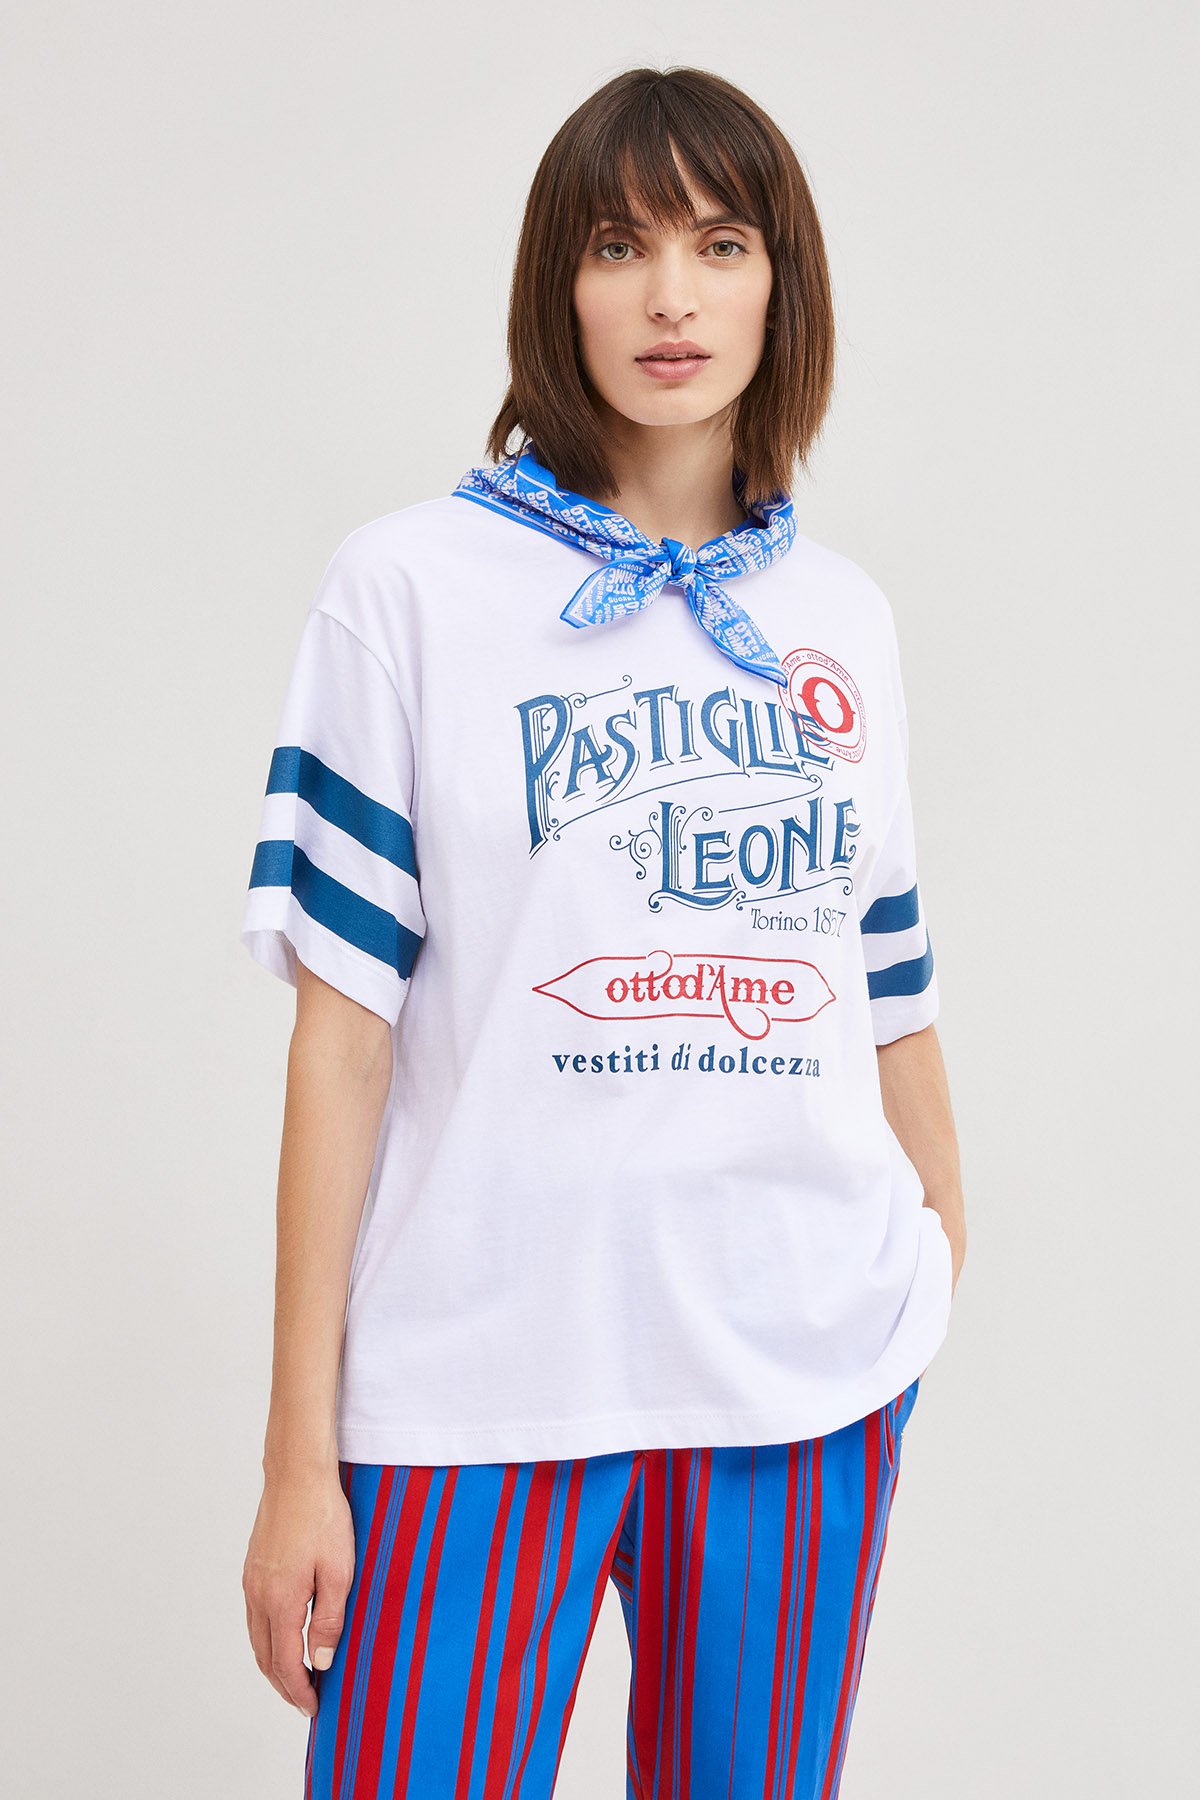 Pastiglie Leone T-shirt